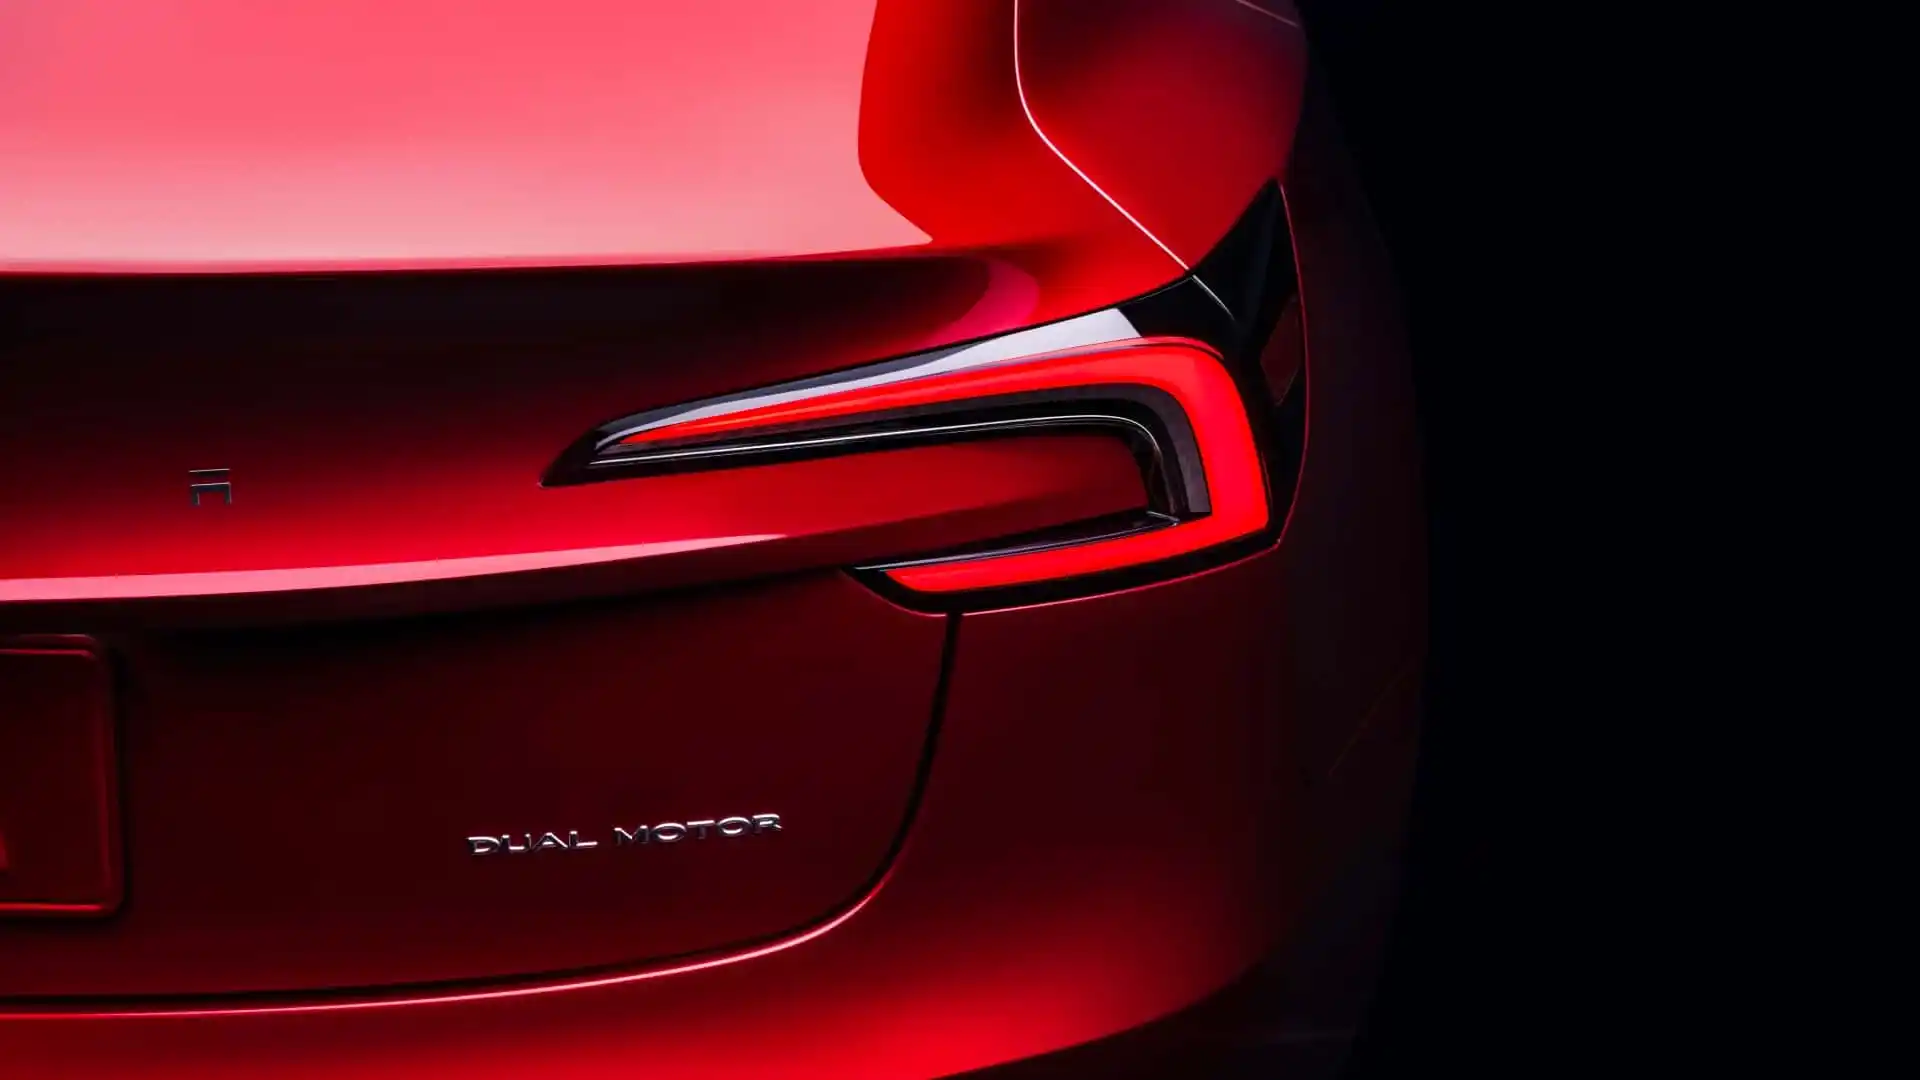 Yeni nesil Tesla Model 3 sürücülere neler sunuyor?